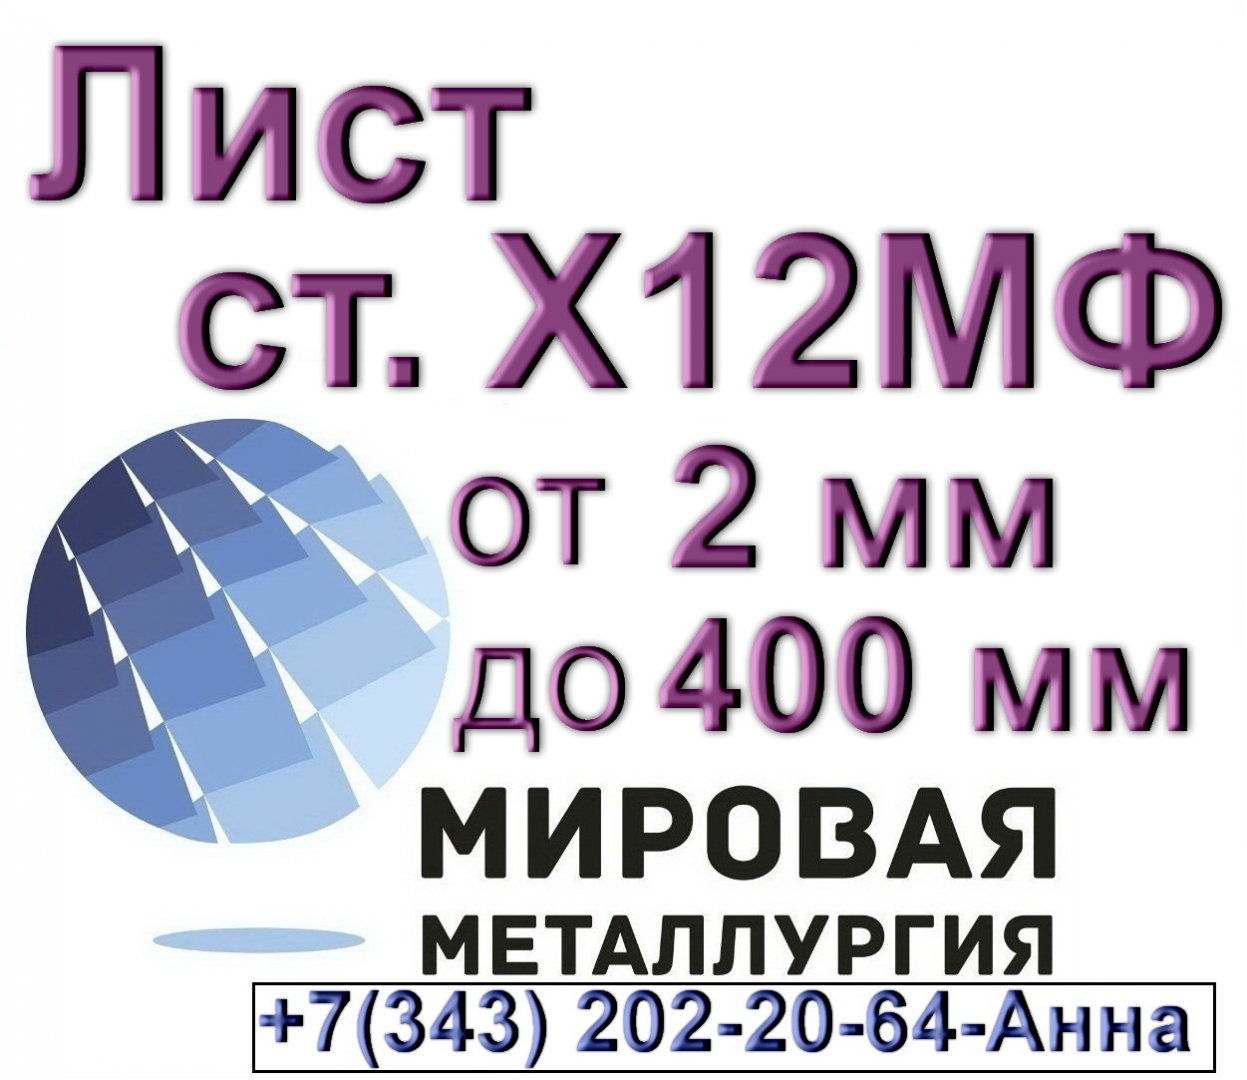 Продам металлопрокат в Красноярском районе, листы Х12МФ из наличия, На складе у компании